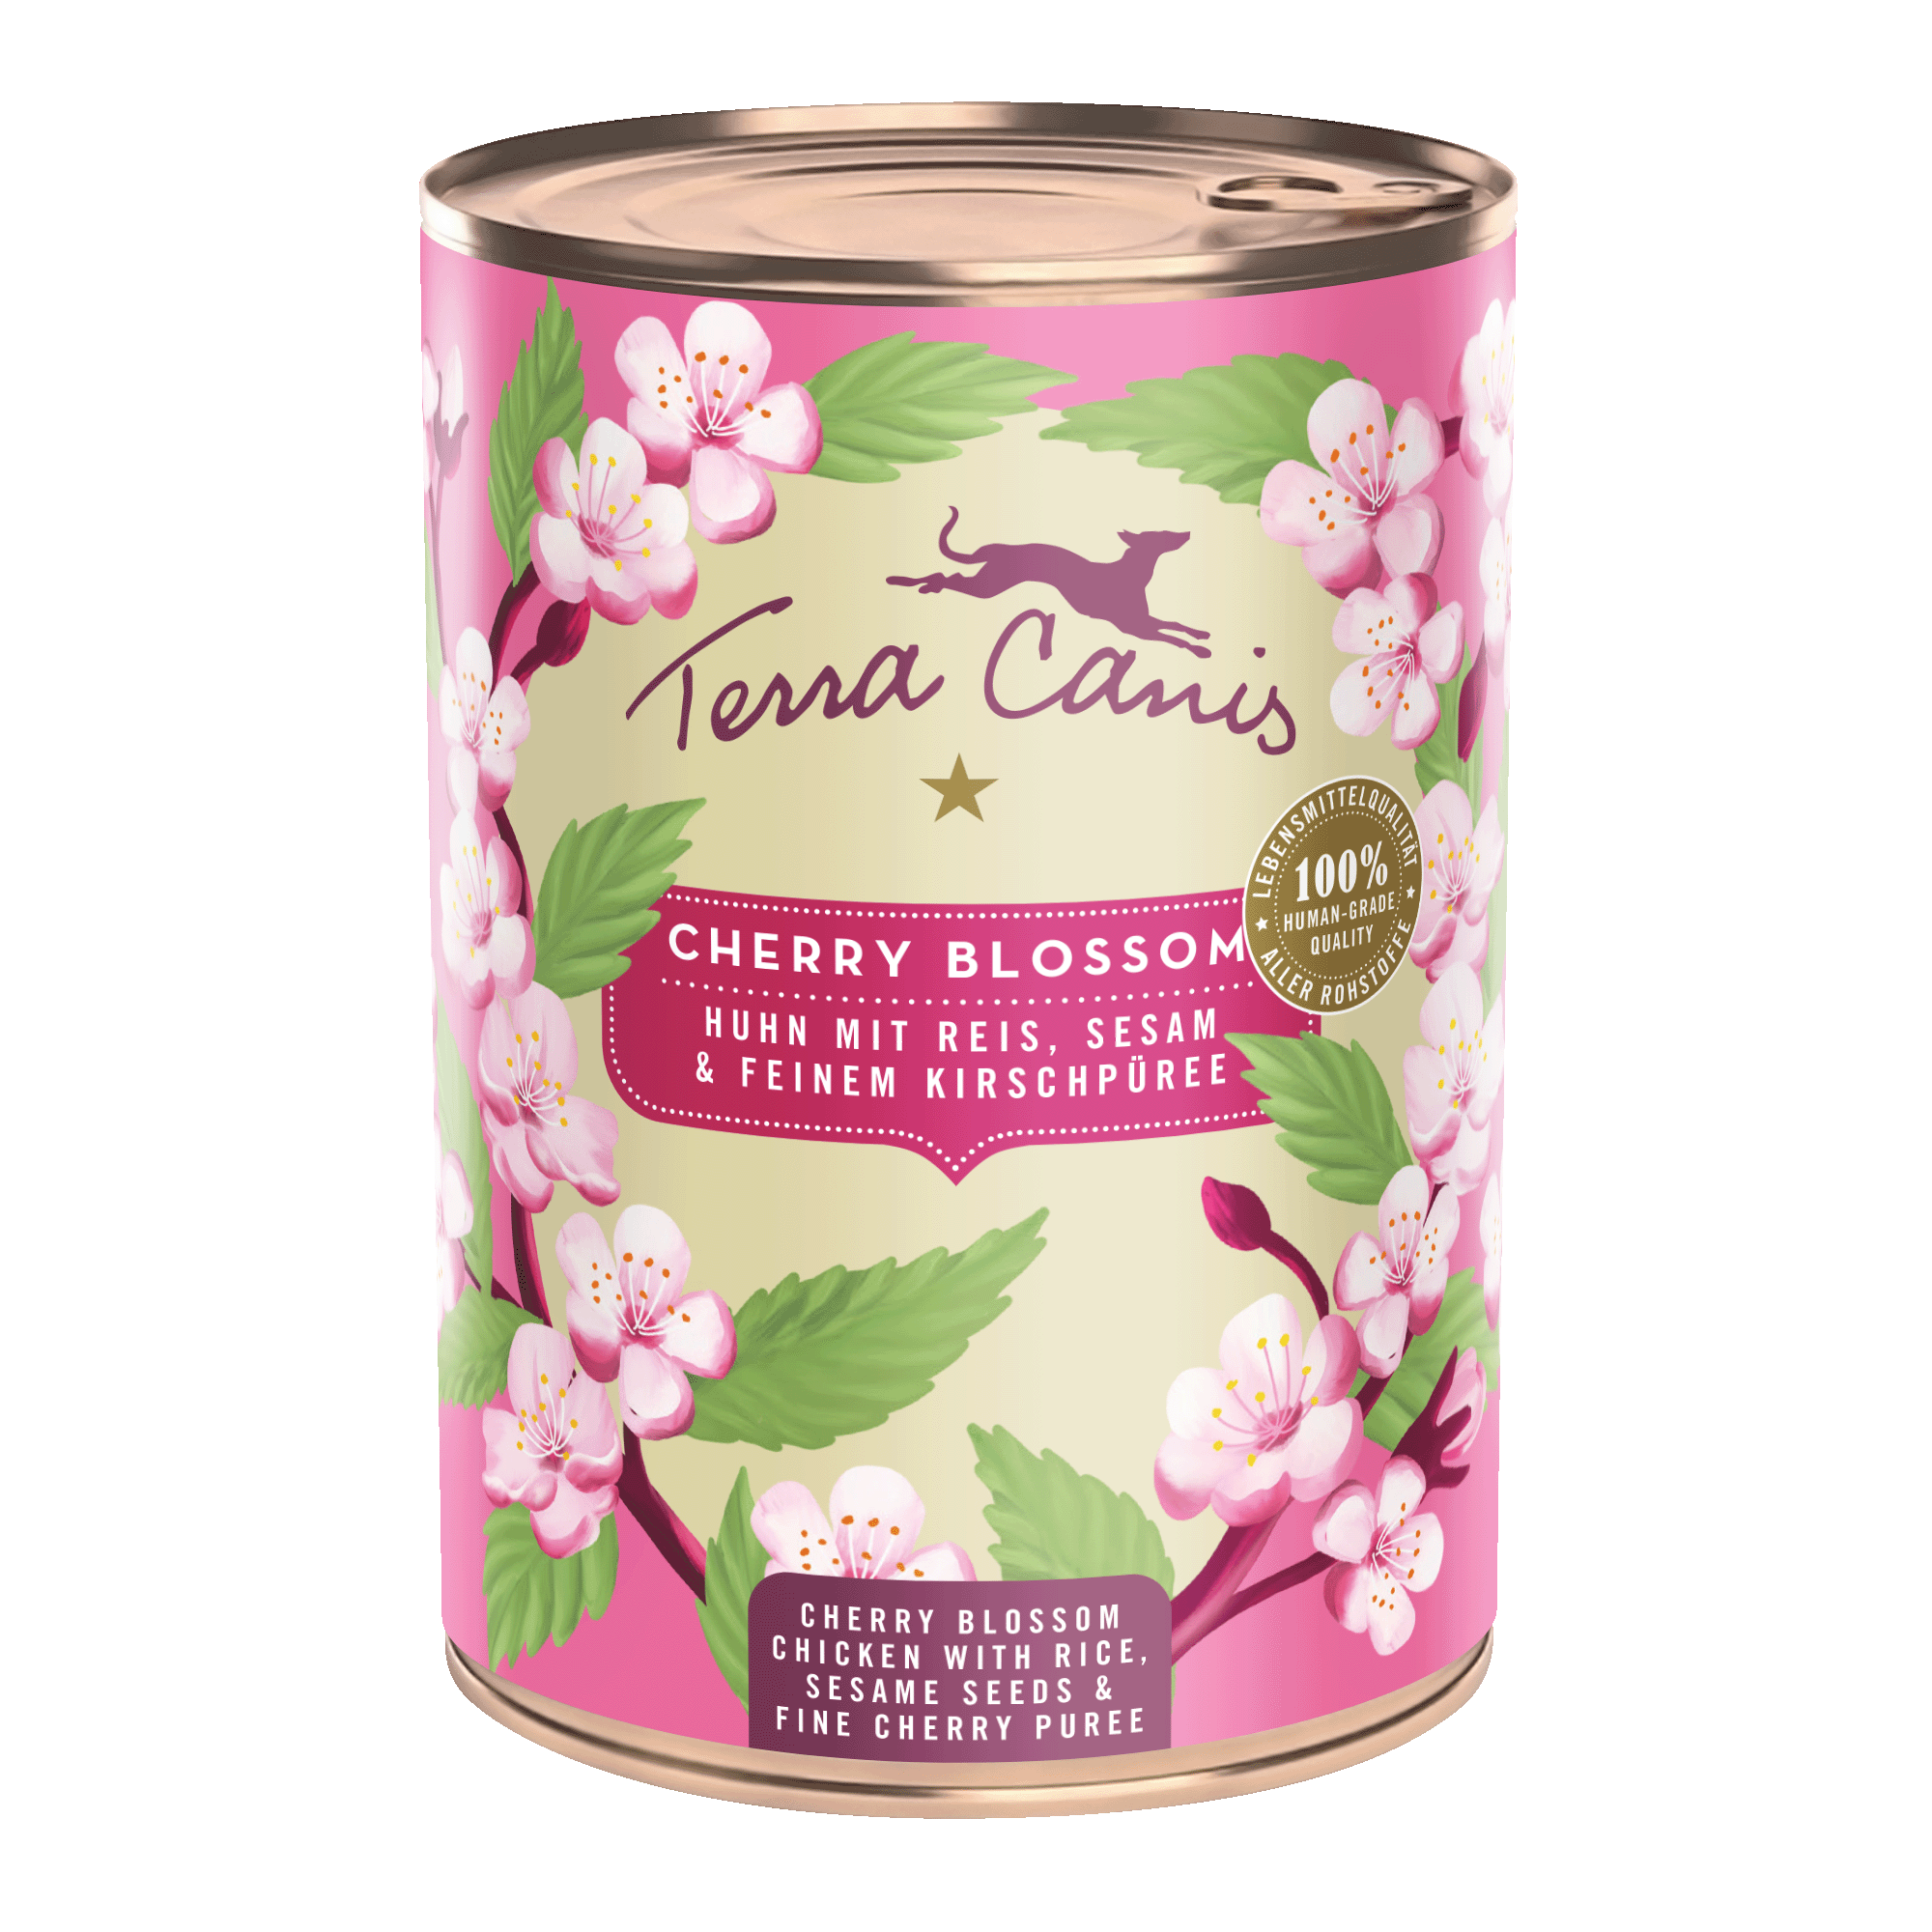 Cherry Blossom: pollo con riso, sesamo e una delicata purea di ciliegie